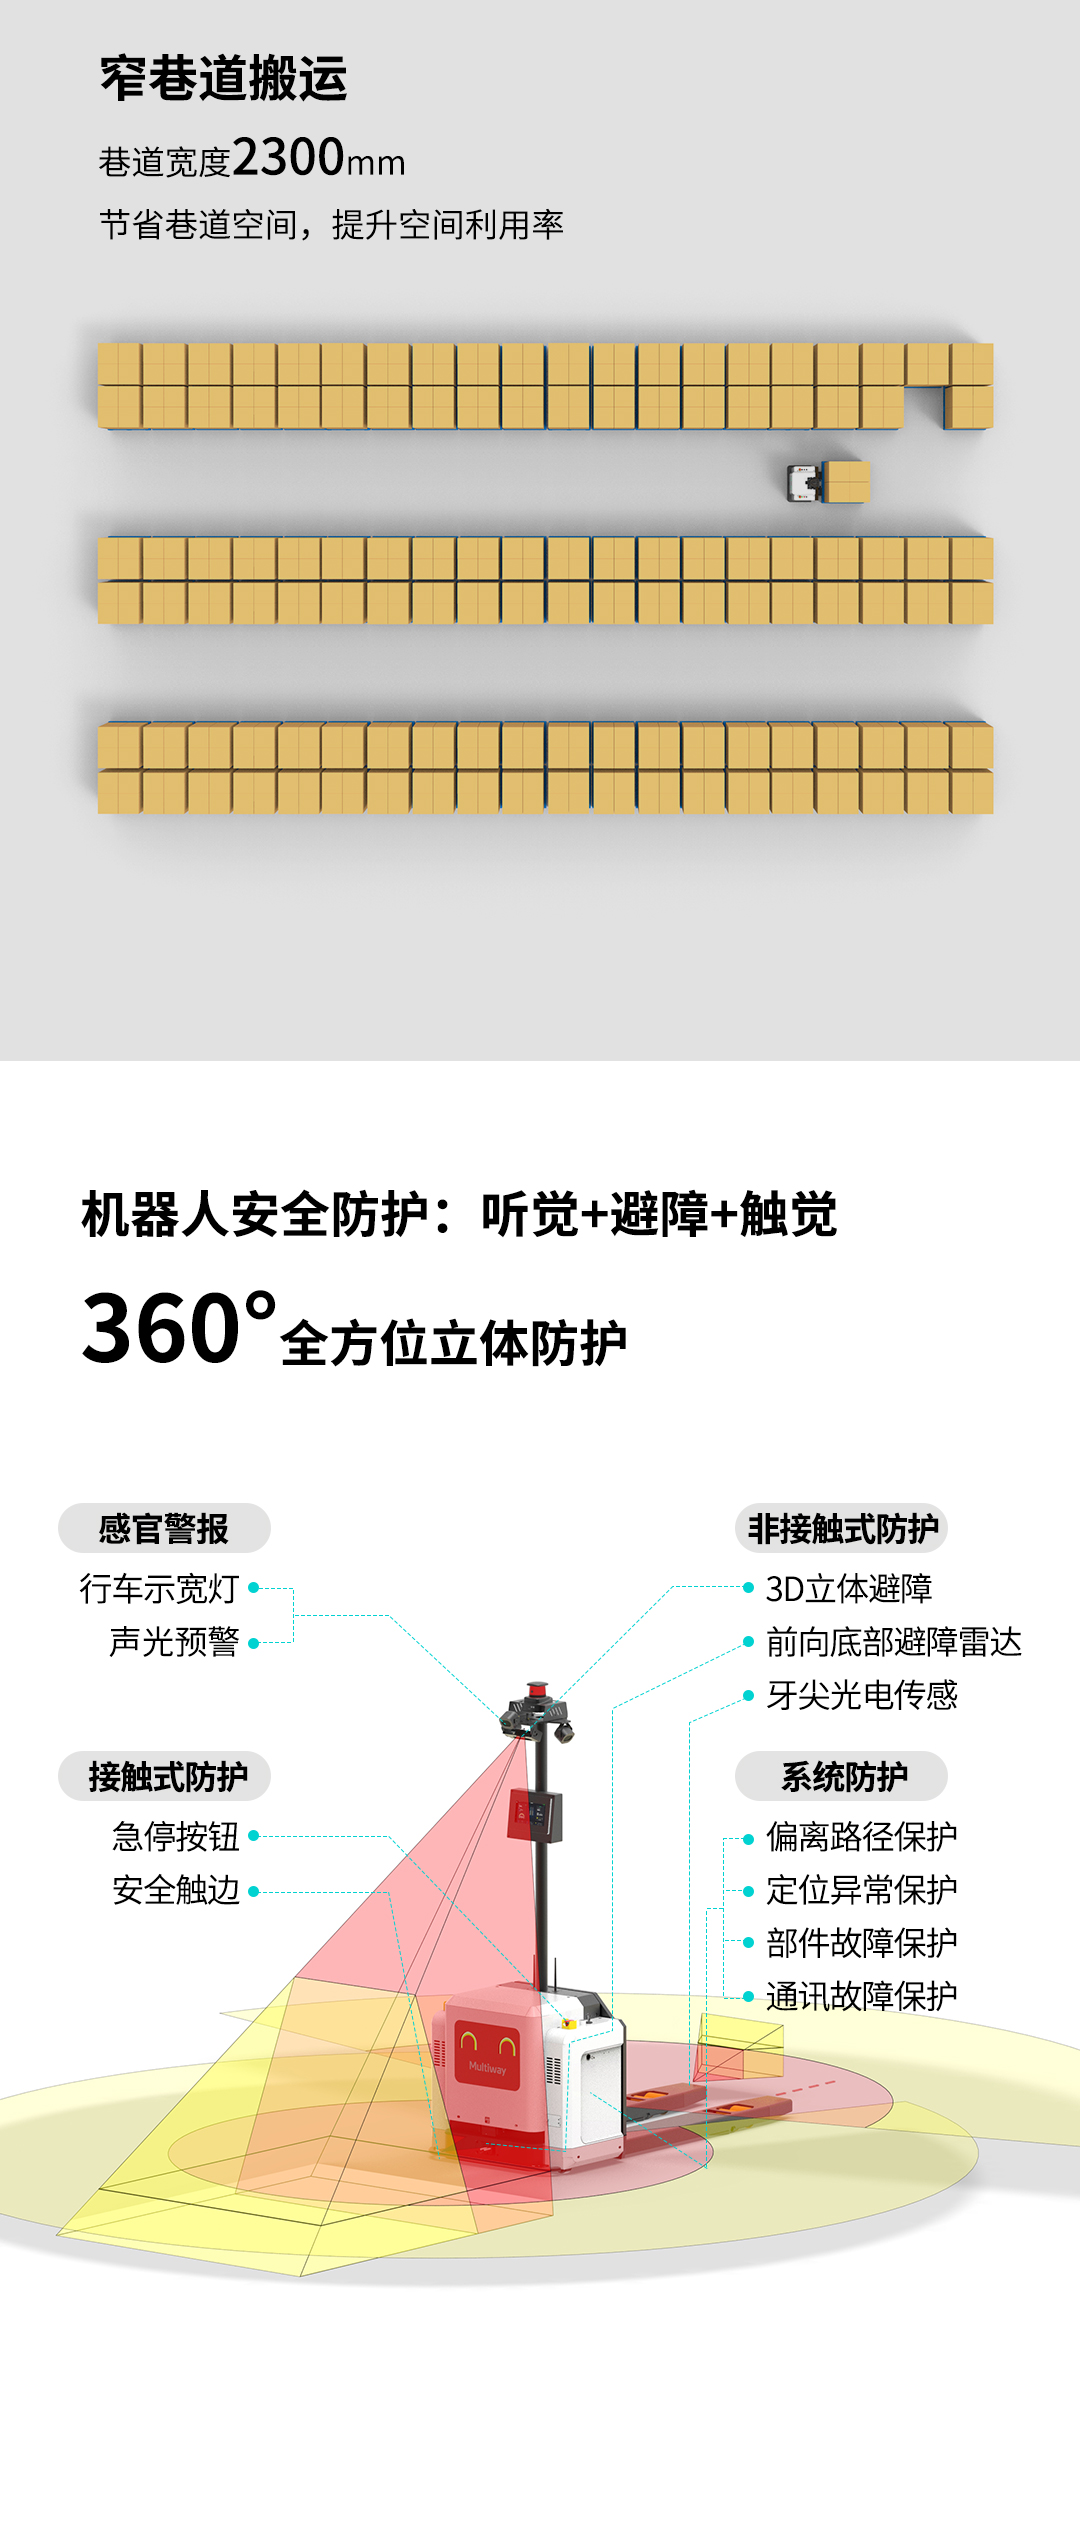 劢微机器人公司微蜂X20助力纺织工厂智能化升级4